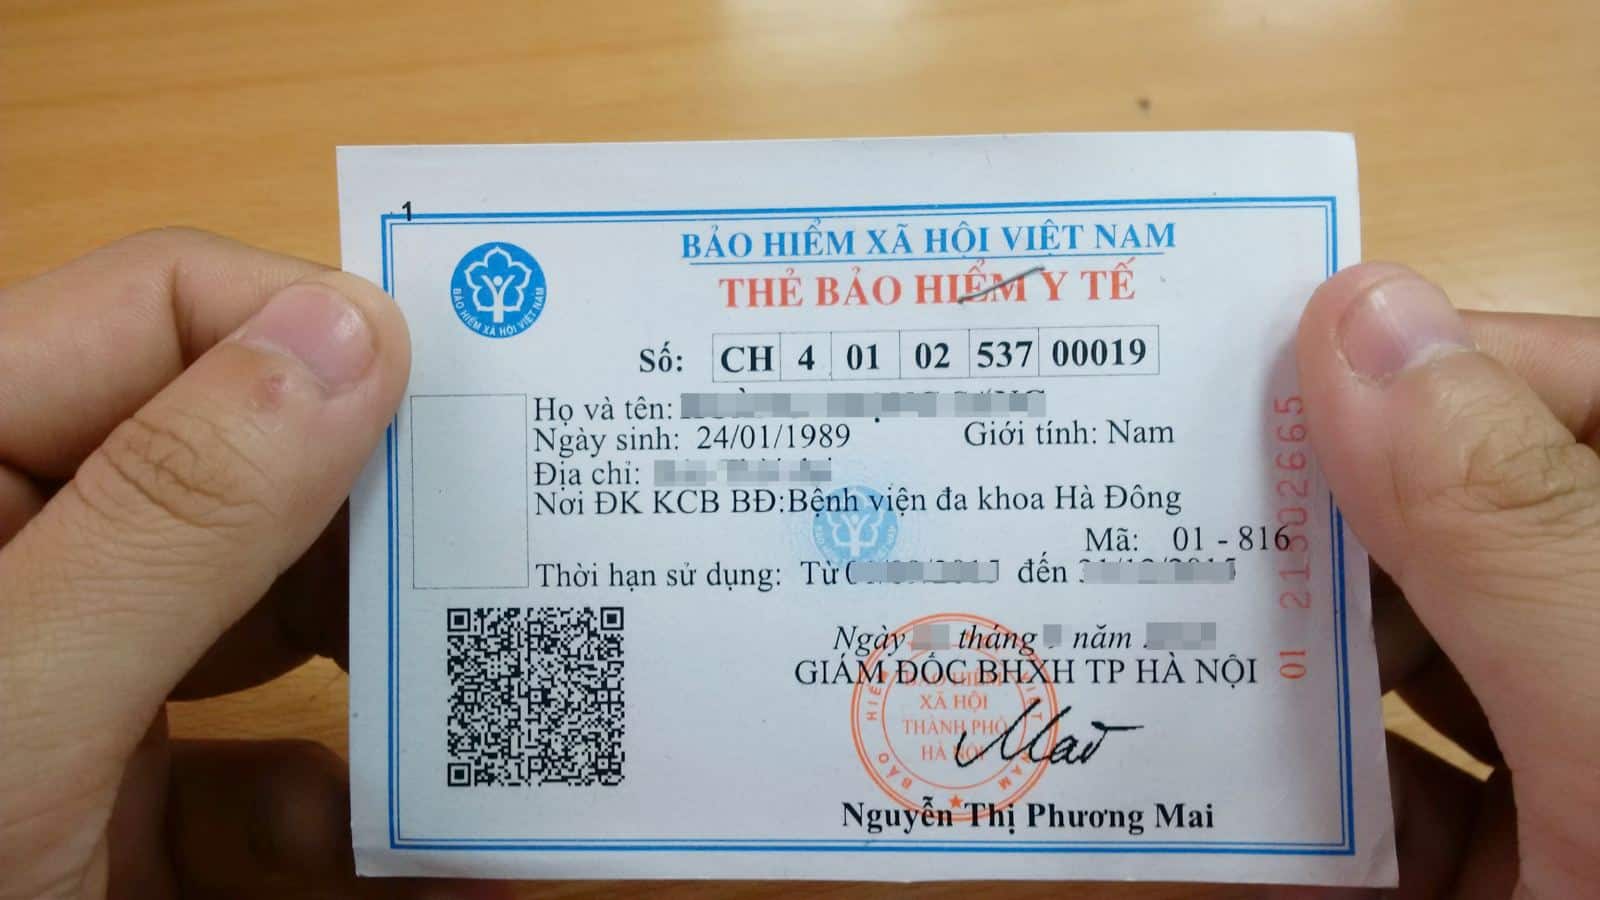 Chính sách bảo hiểm y tế mới hiện đang được triển khai tại Việt Nam, đáp ứng phục vụ nhu cầu y tế cho toàn dân. Hãy xem hình ảnh liên quan để hiểu rõ hơn và nhận biết được những ưu đãi mà chính sách này mang lại cho mọi người.